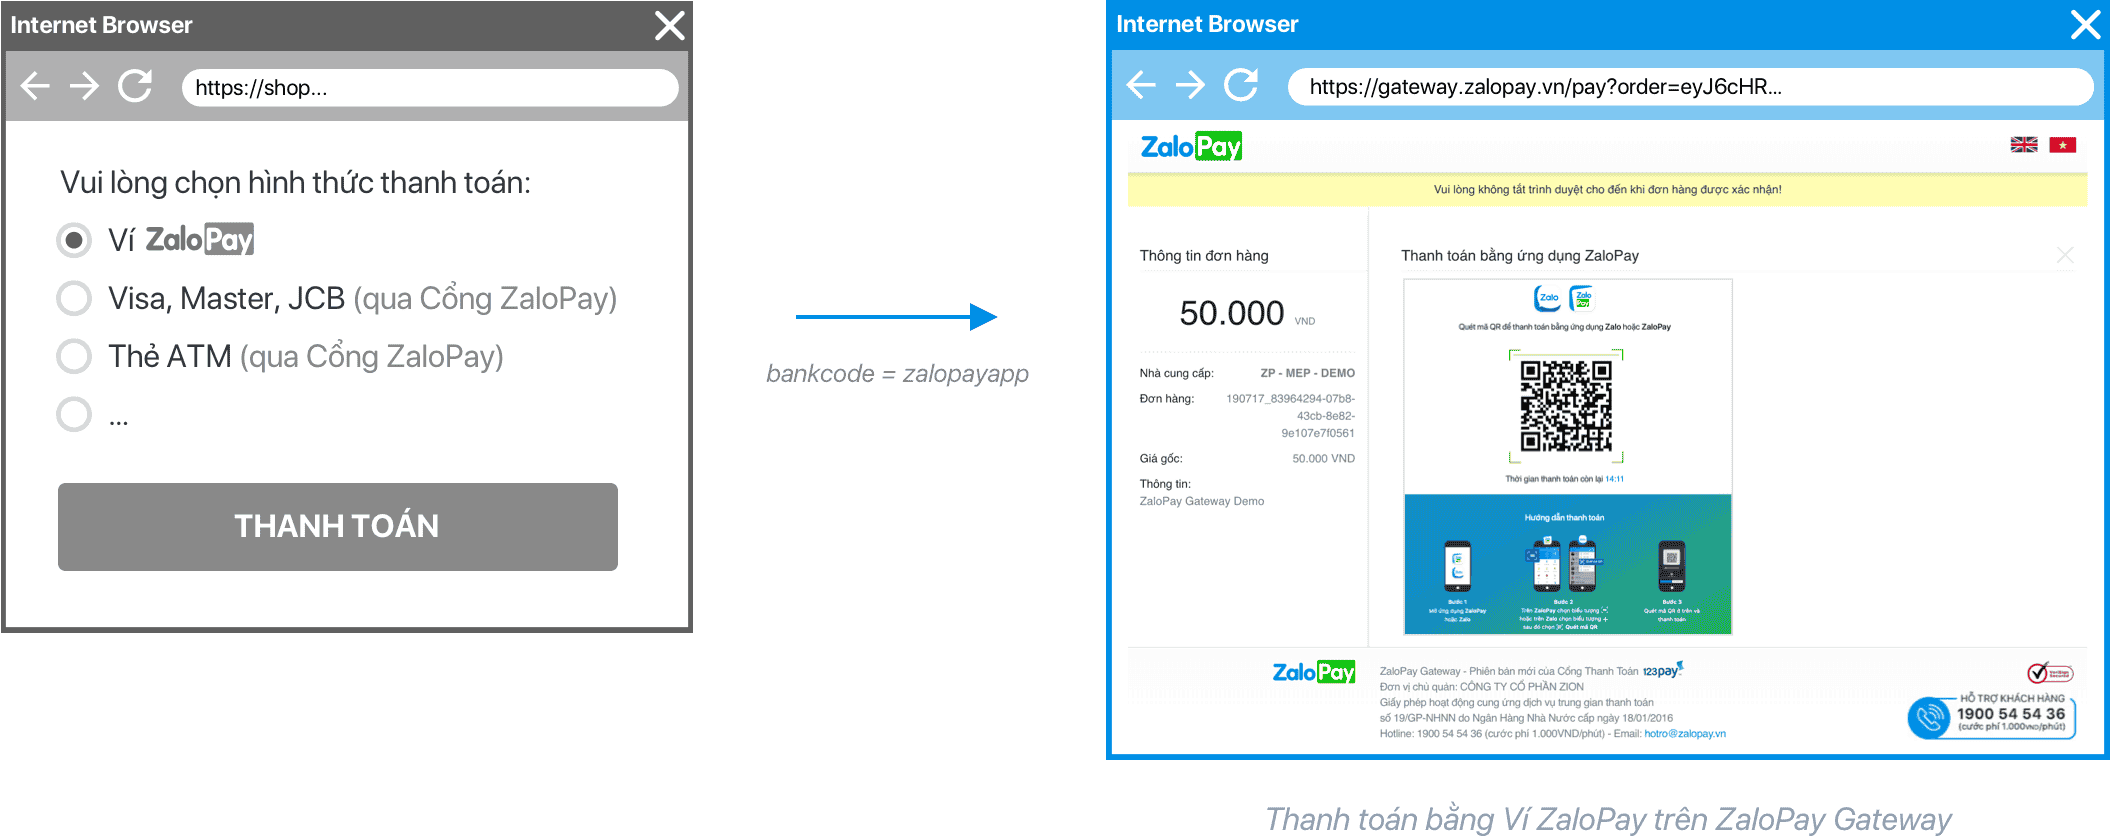 Ví dụ kết quả hiển thị khi chọn hình thức thanh toán ví ZaloPay